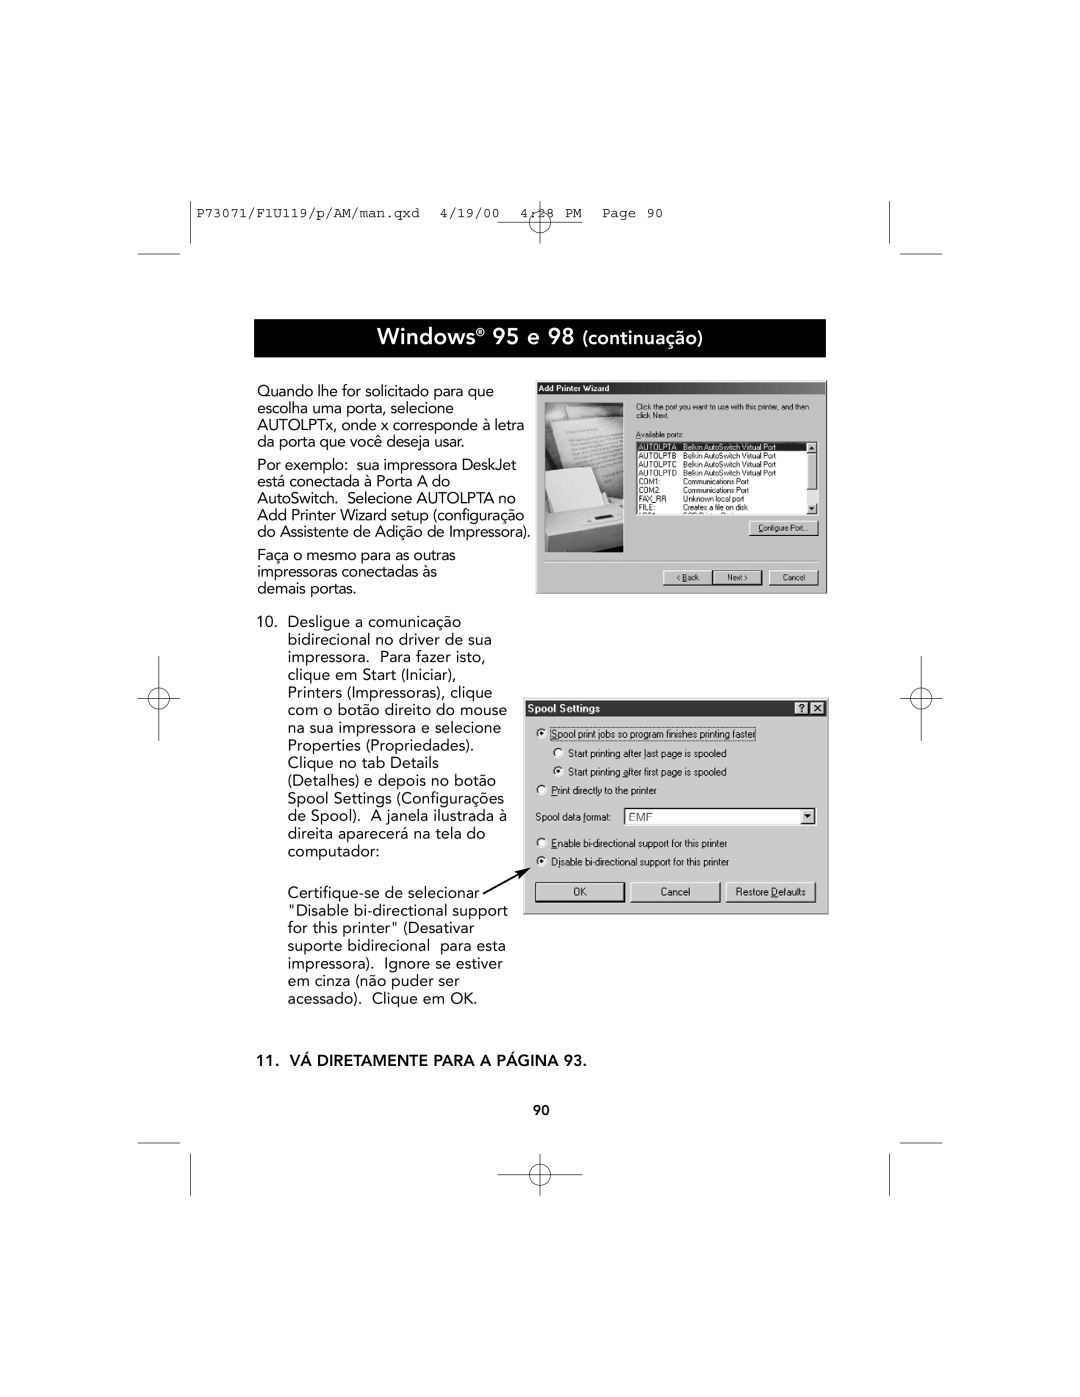 Belkin F1U119 user manual Windows 95 e 98 continuação, 11. VÁ DIRETAMENTE PARA A PÁGINA 